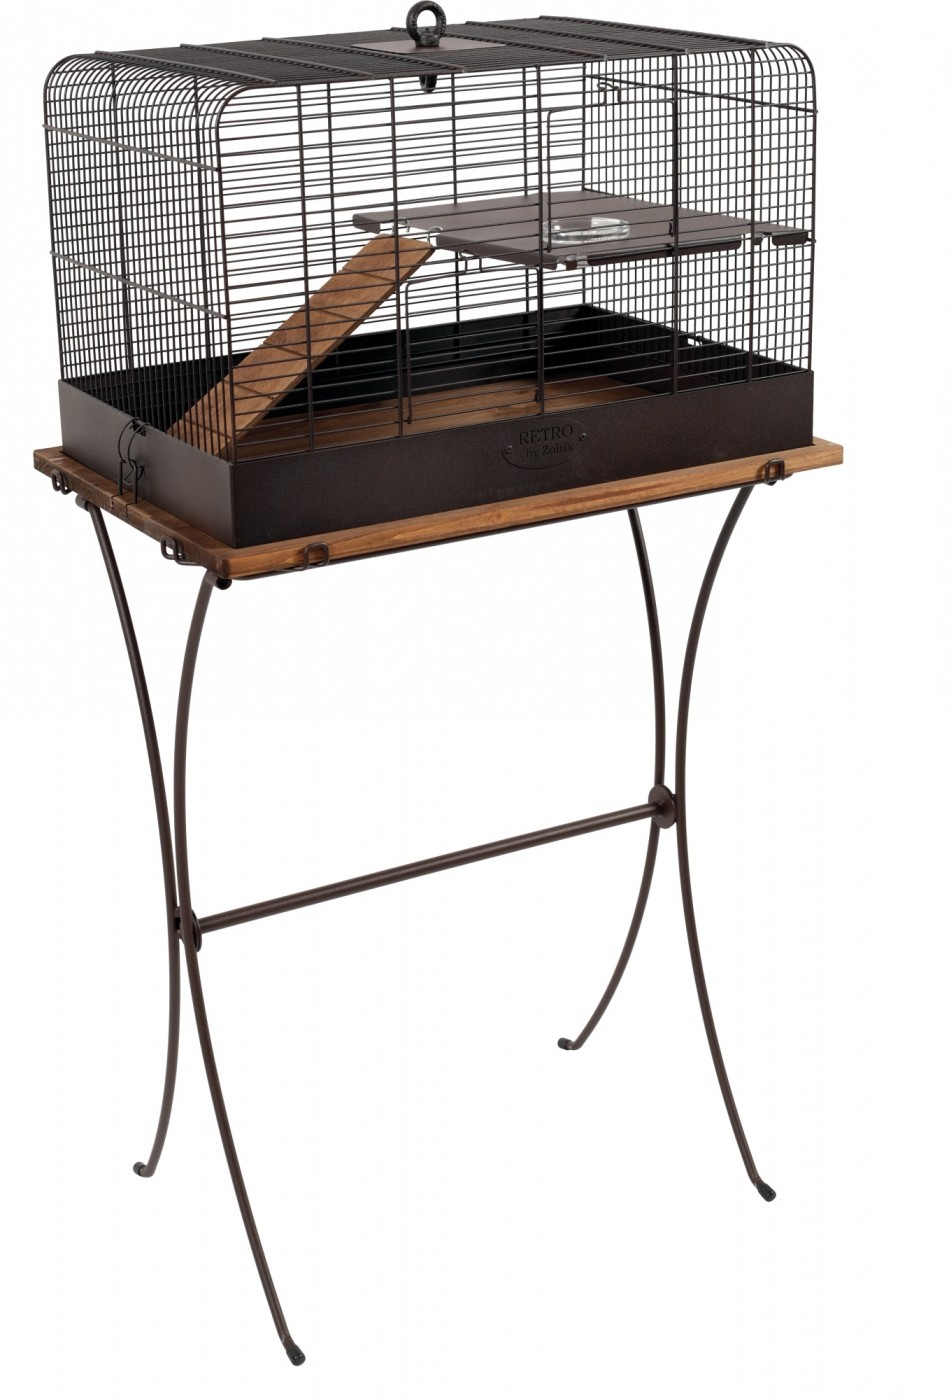 Gaiola para animais roedores - 59 cm - Rétro Fernand